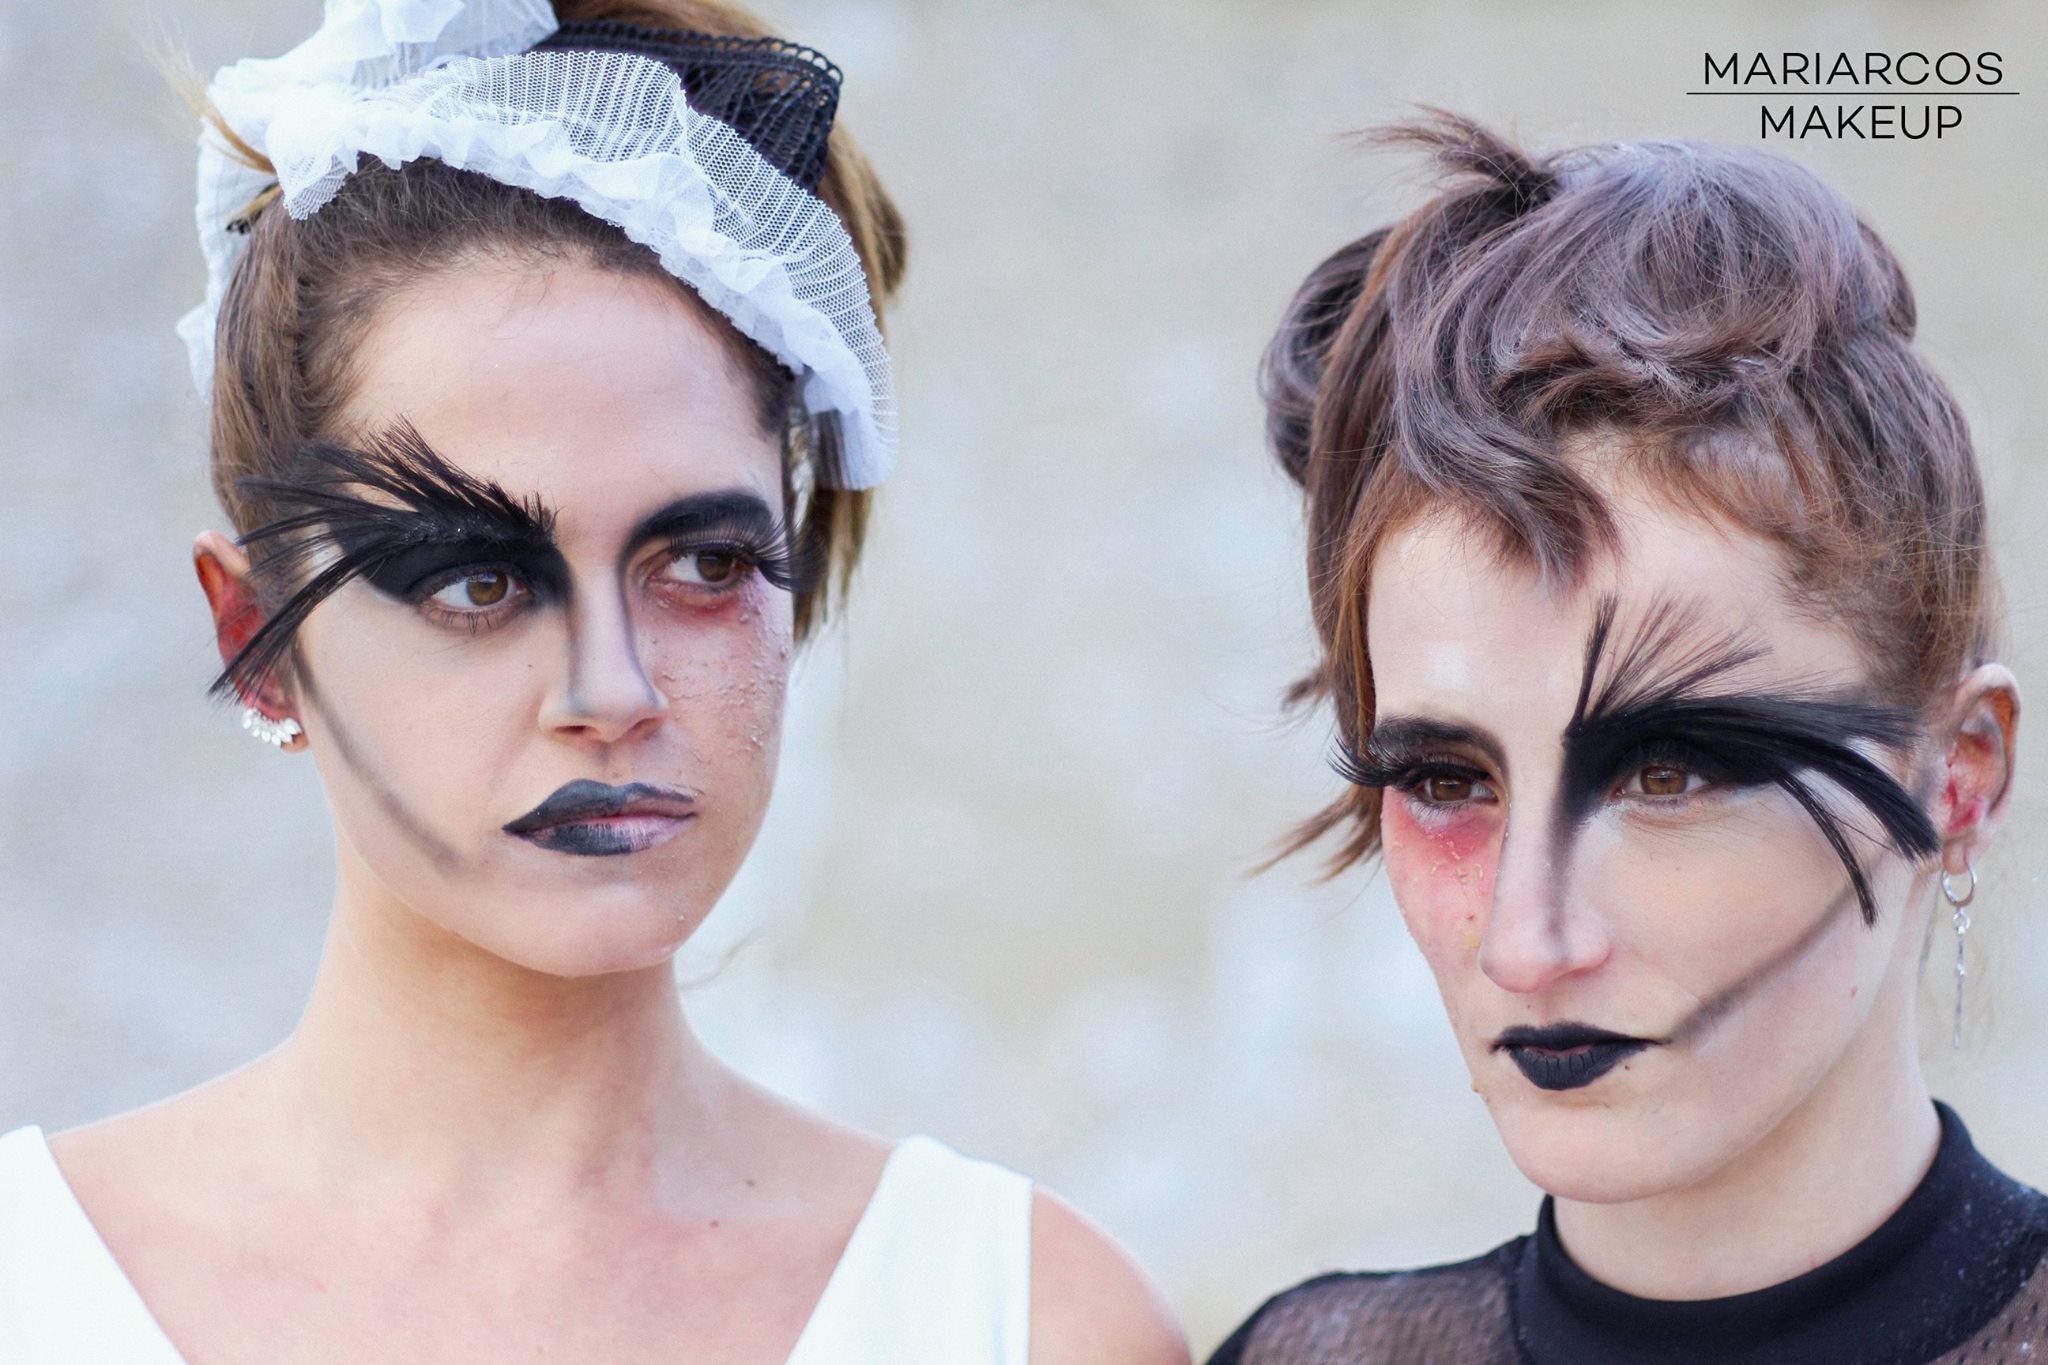 SOLO MODA: Maquillaje de Halloween con Maria Arcos Makeup